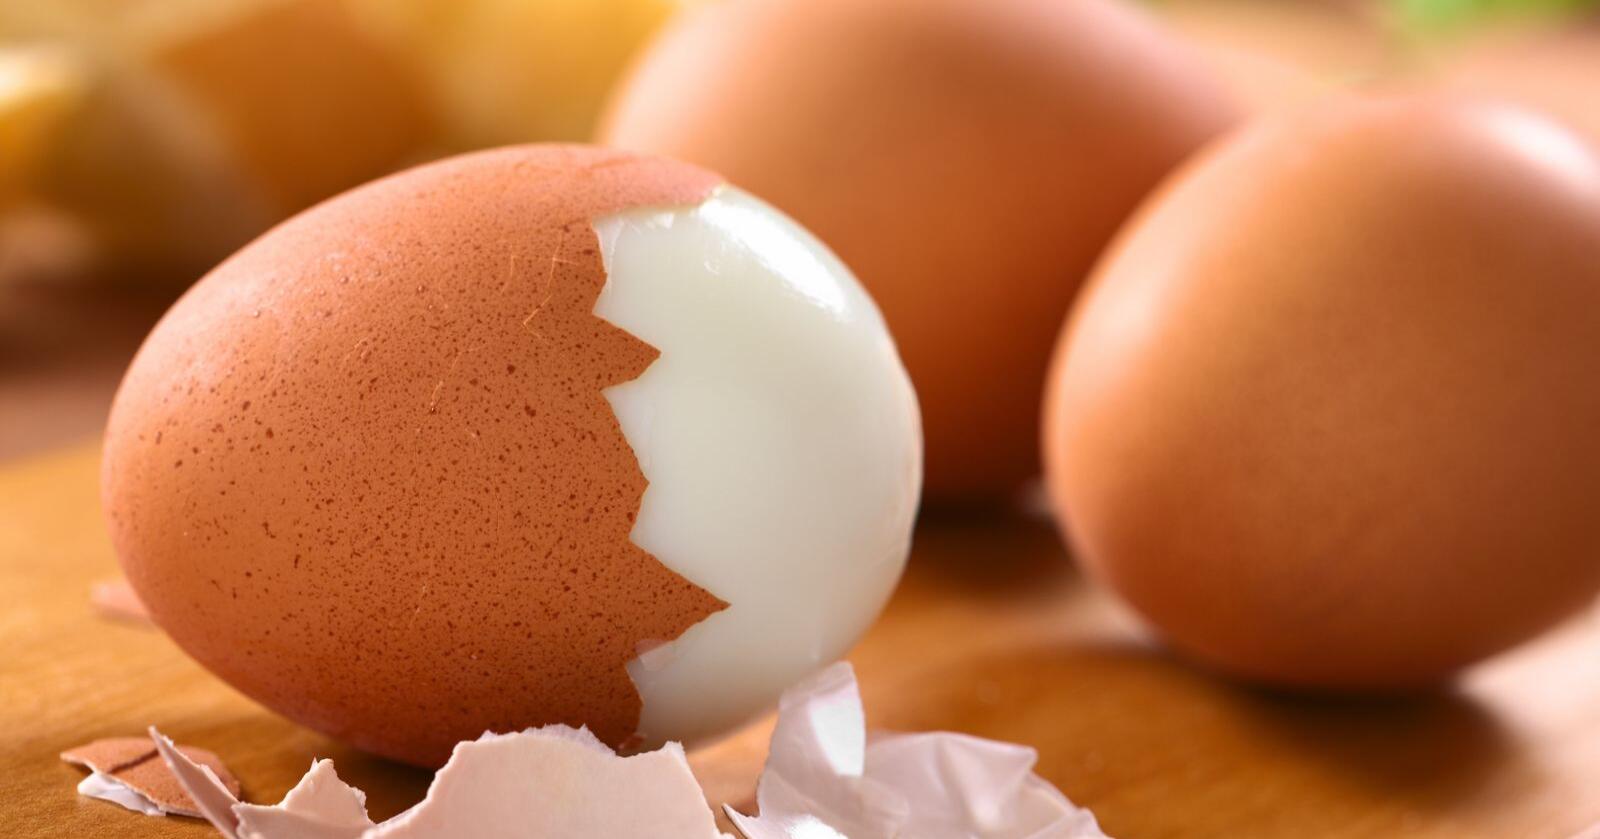 Vi forventar at regjeringa leverer på ei endring av eggproduksjonen som sikrar dei etablerte eggprodusentane ei berekraftig framtid, skriv forfattarane av innlegget. Foto: Mostphotos